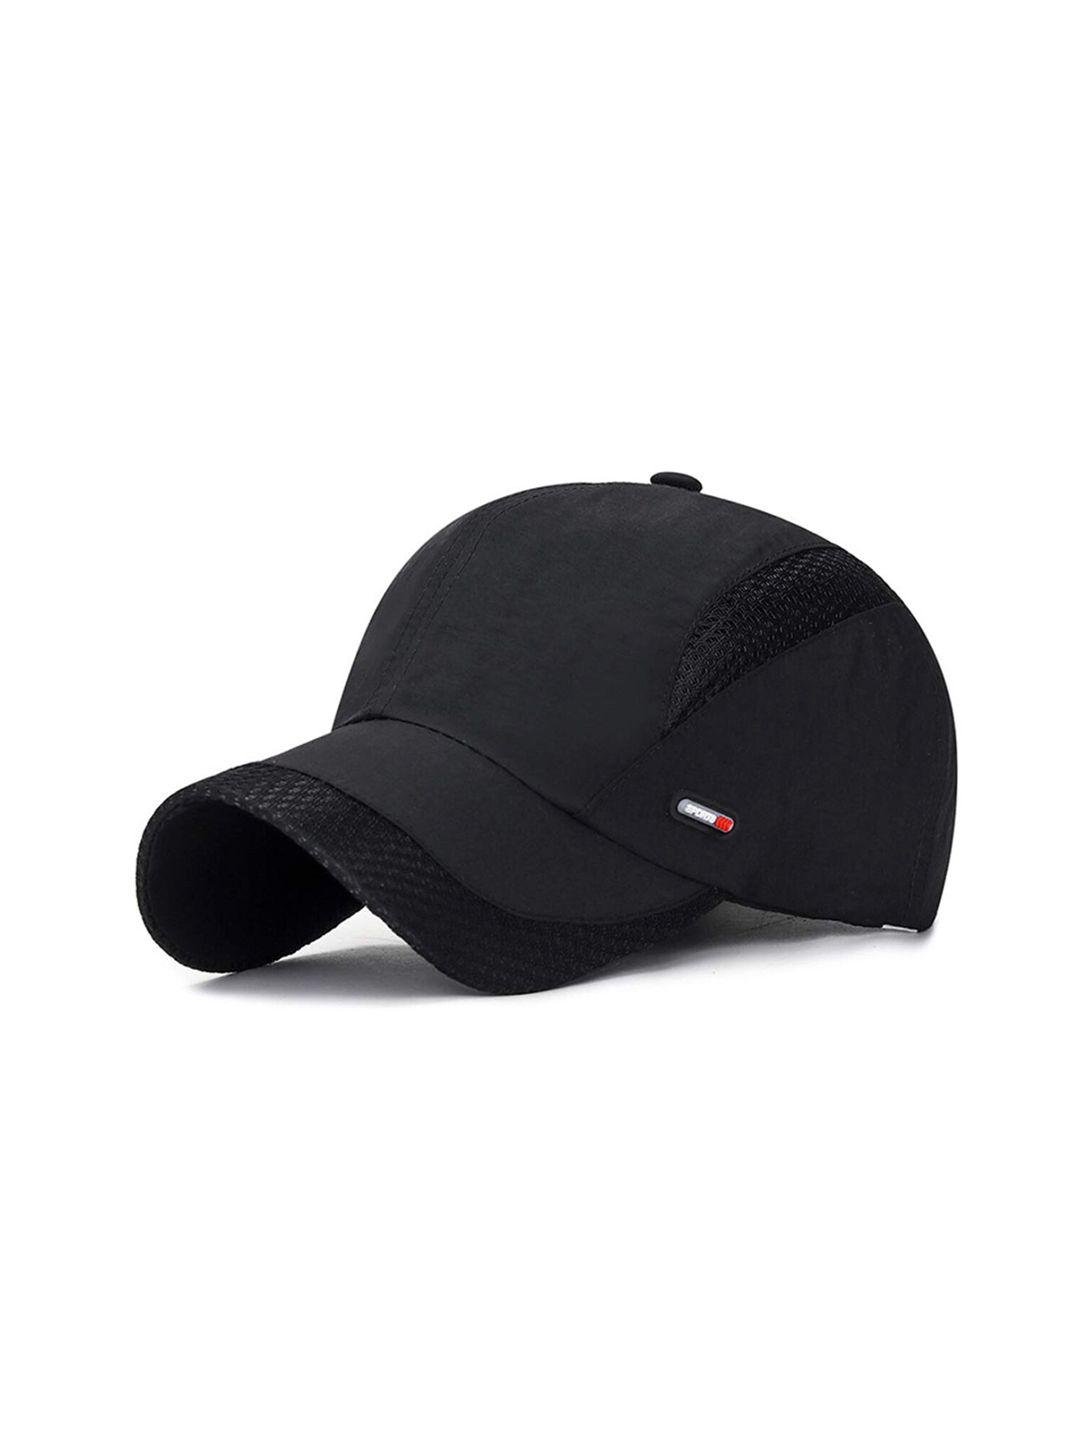 isweven self design lightweight baseball cap